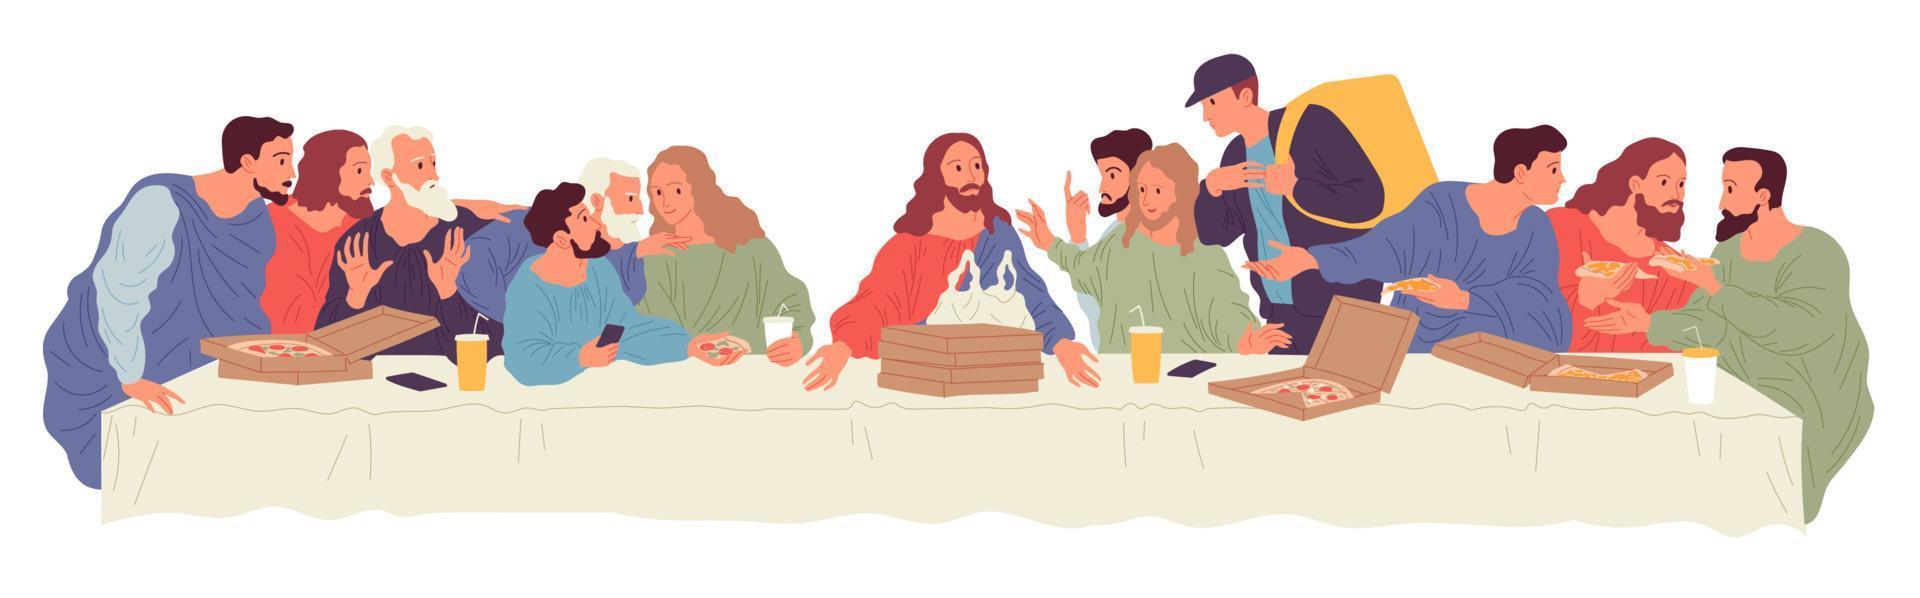 mensen die aan tafel zitten met eten bezorgd door een koerier van de voedselbezorgservice. illustratie gebaseerd op leonardo da vinci die het laatste avondmaal schildert. vector